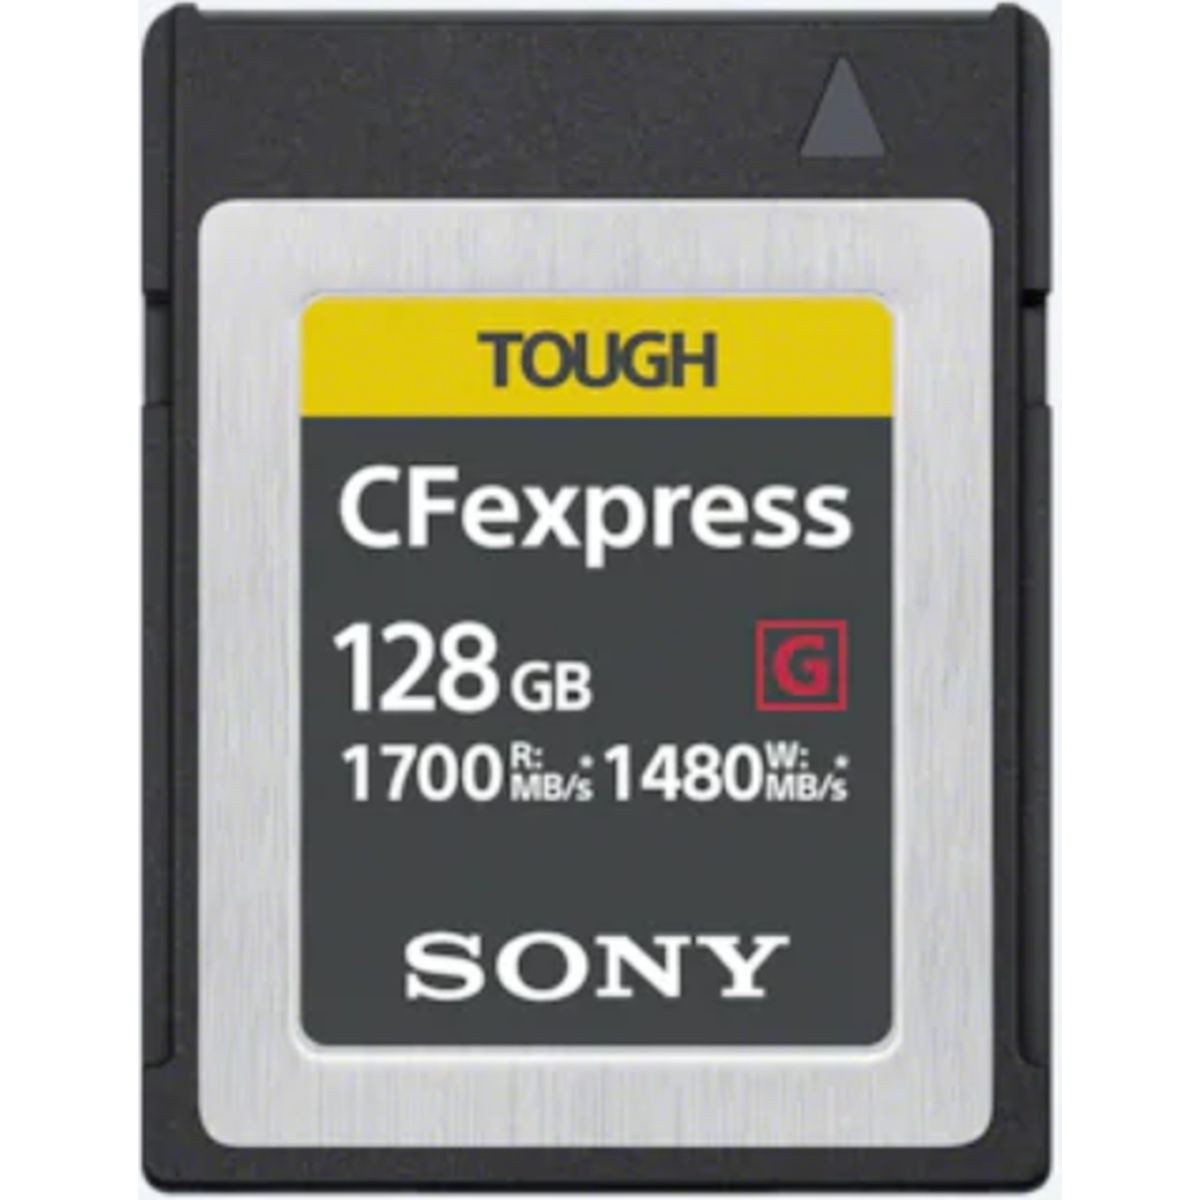 Sony Tough! CFexpress Type B 128GB R1700/W1480 